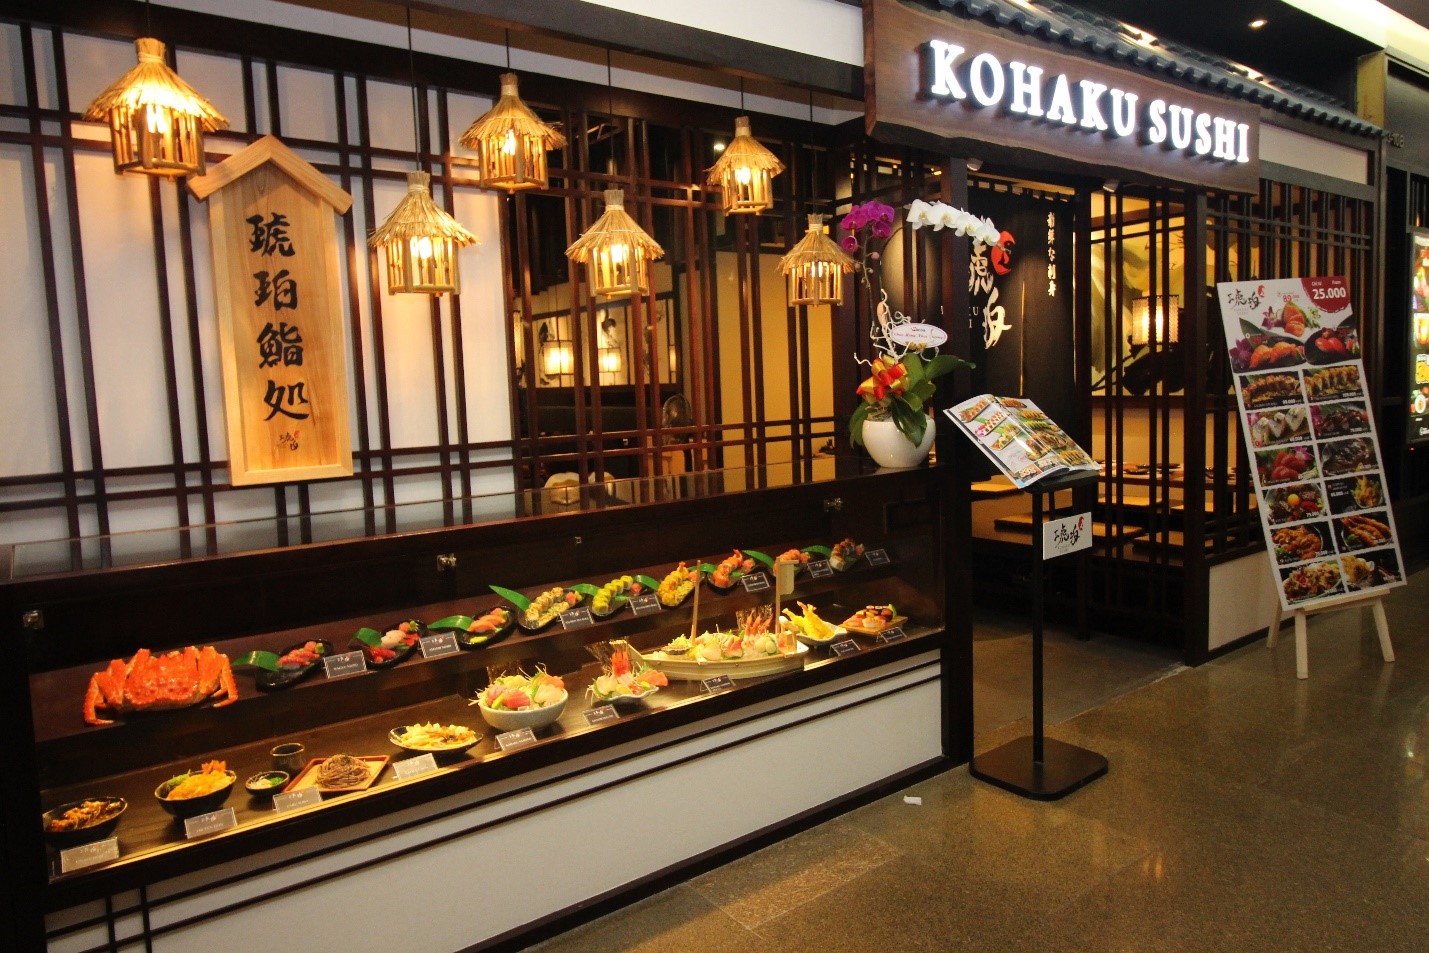 Kohakushi – Nhà hàng Sushi